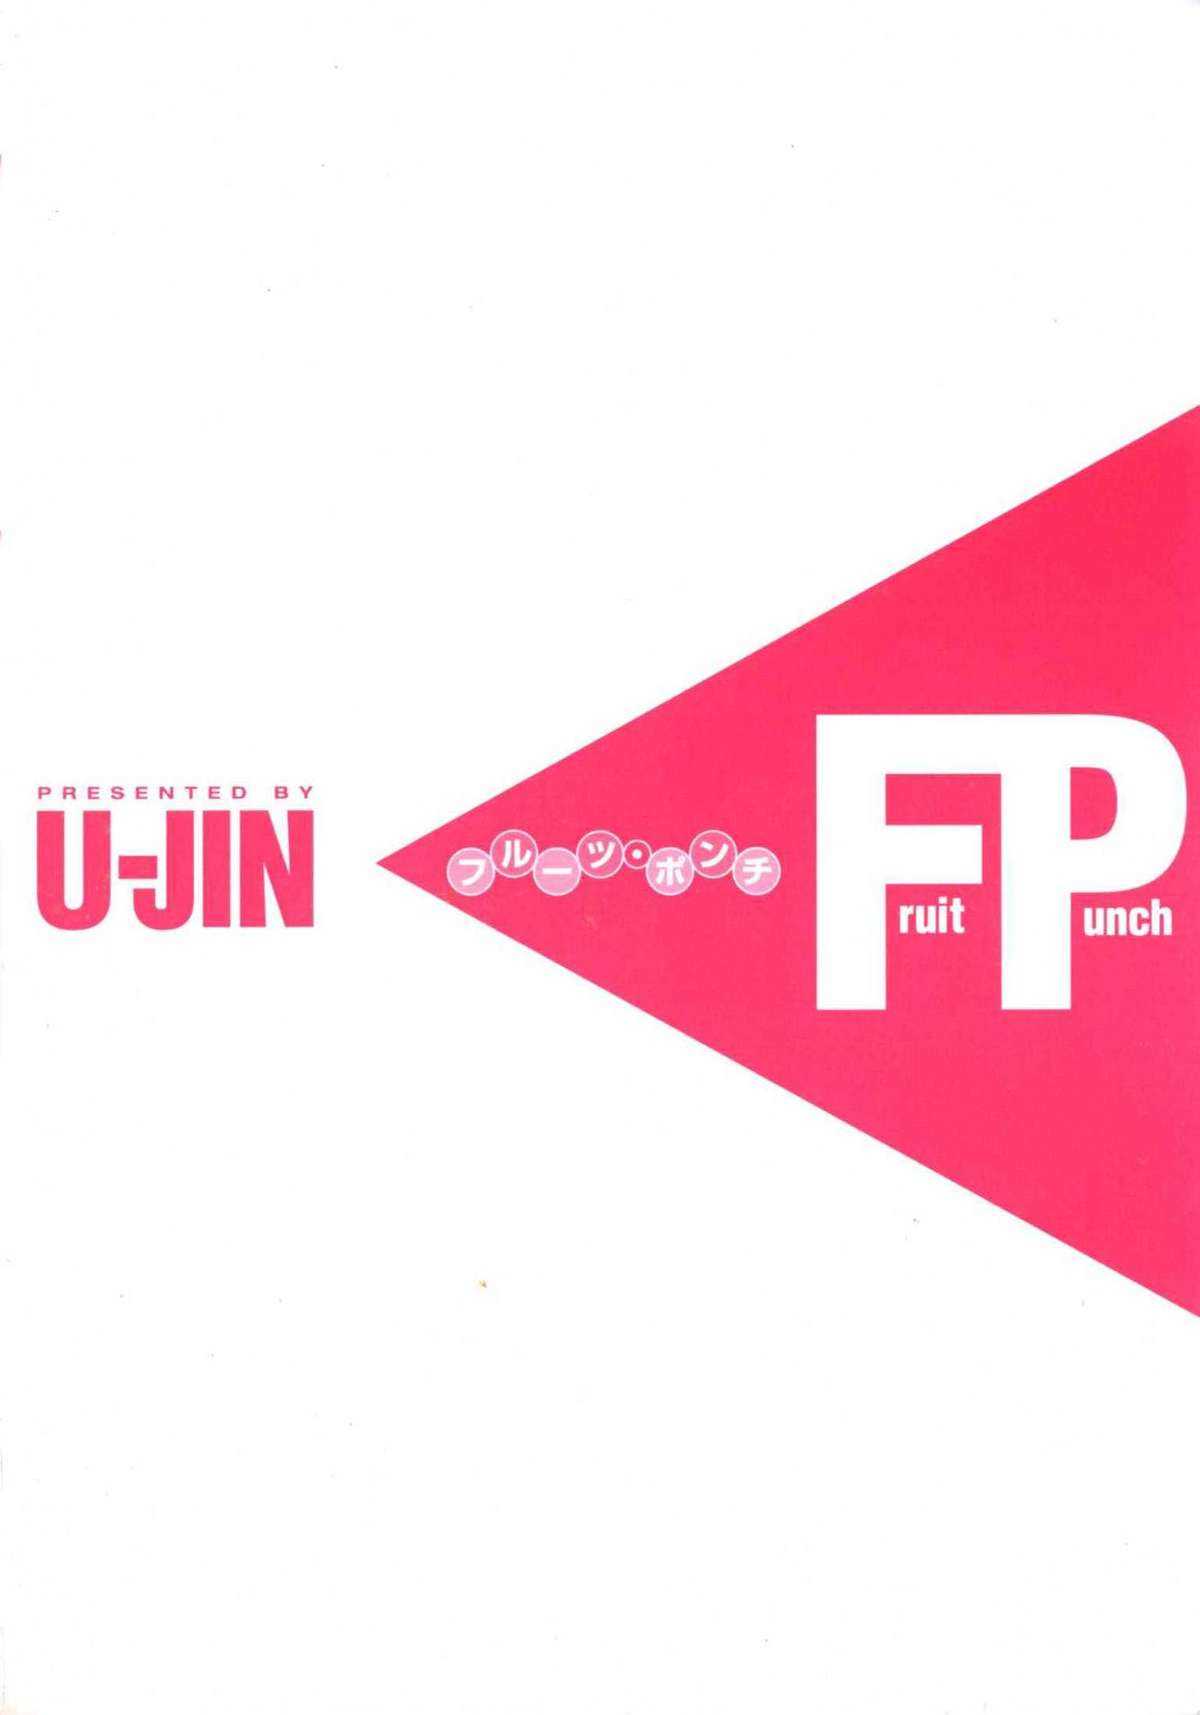 [U-Jin] Fruit Punch [遊人] Fruit Punch